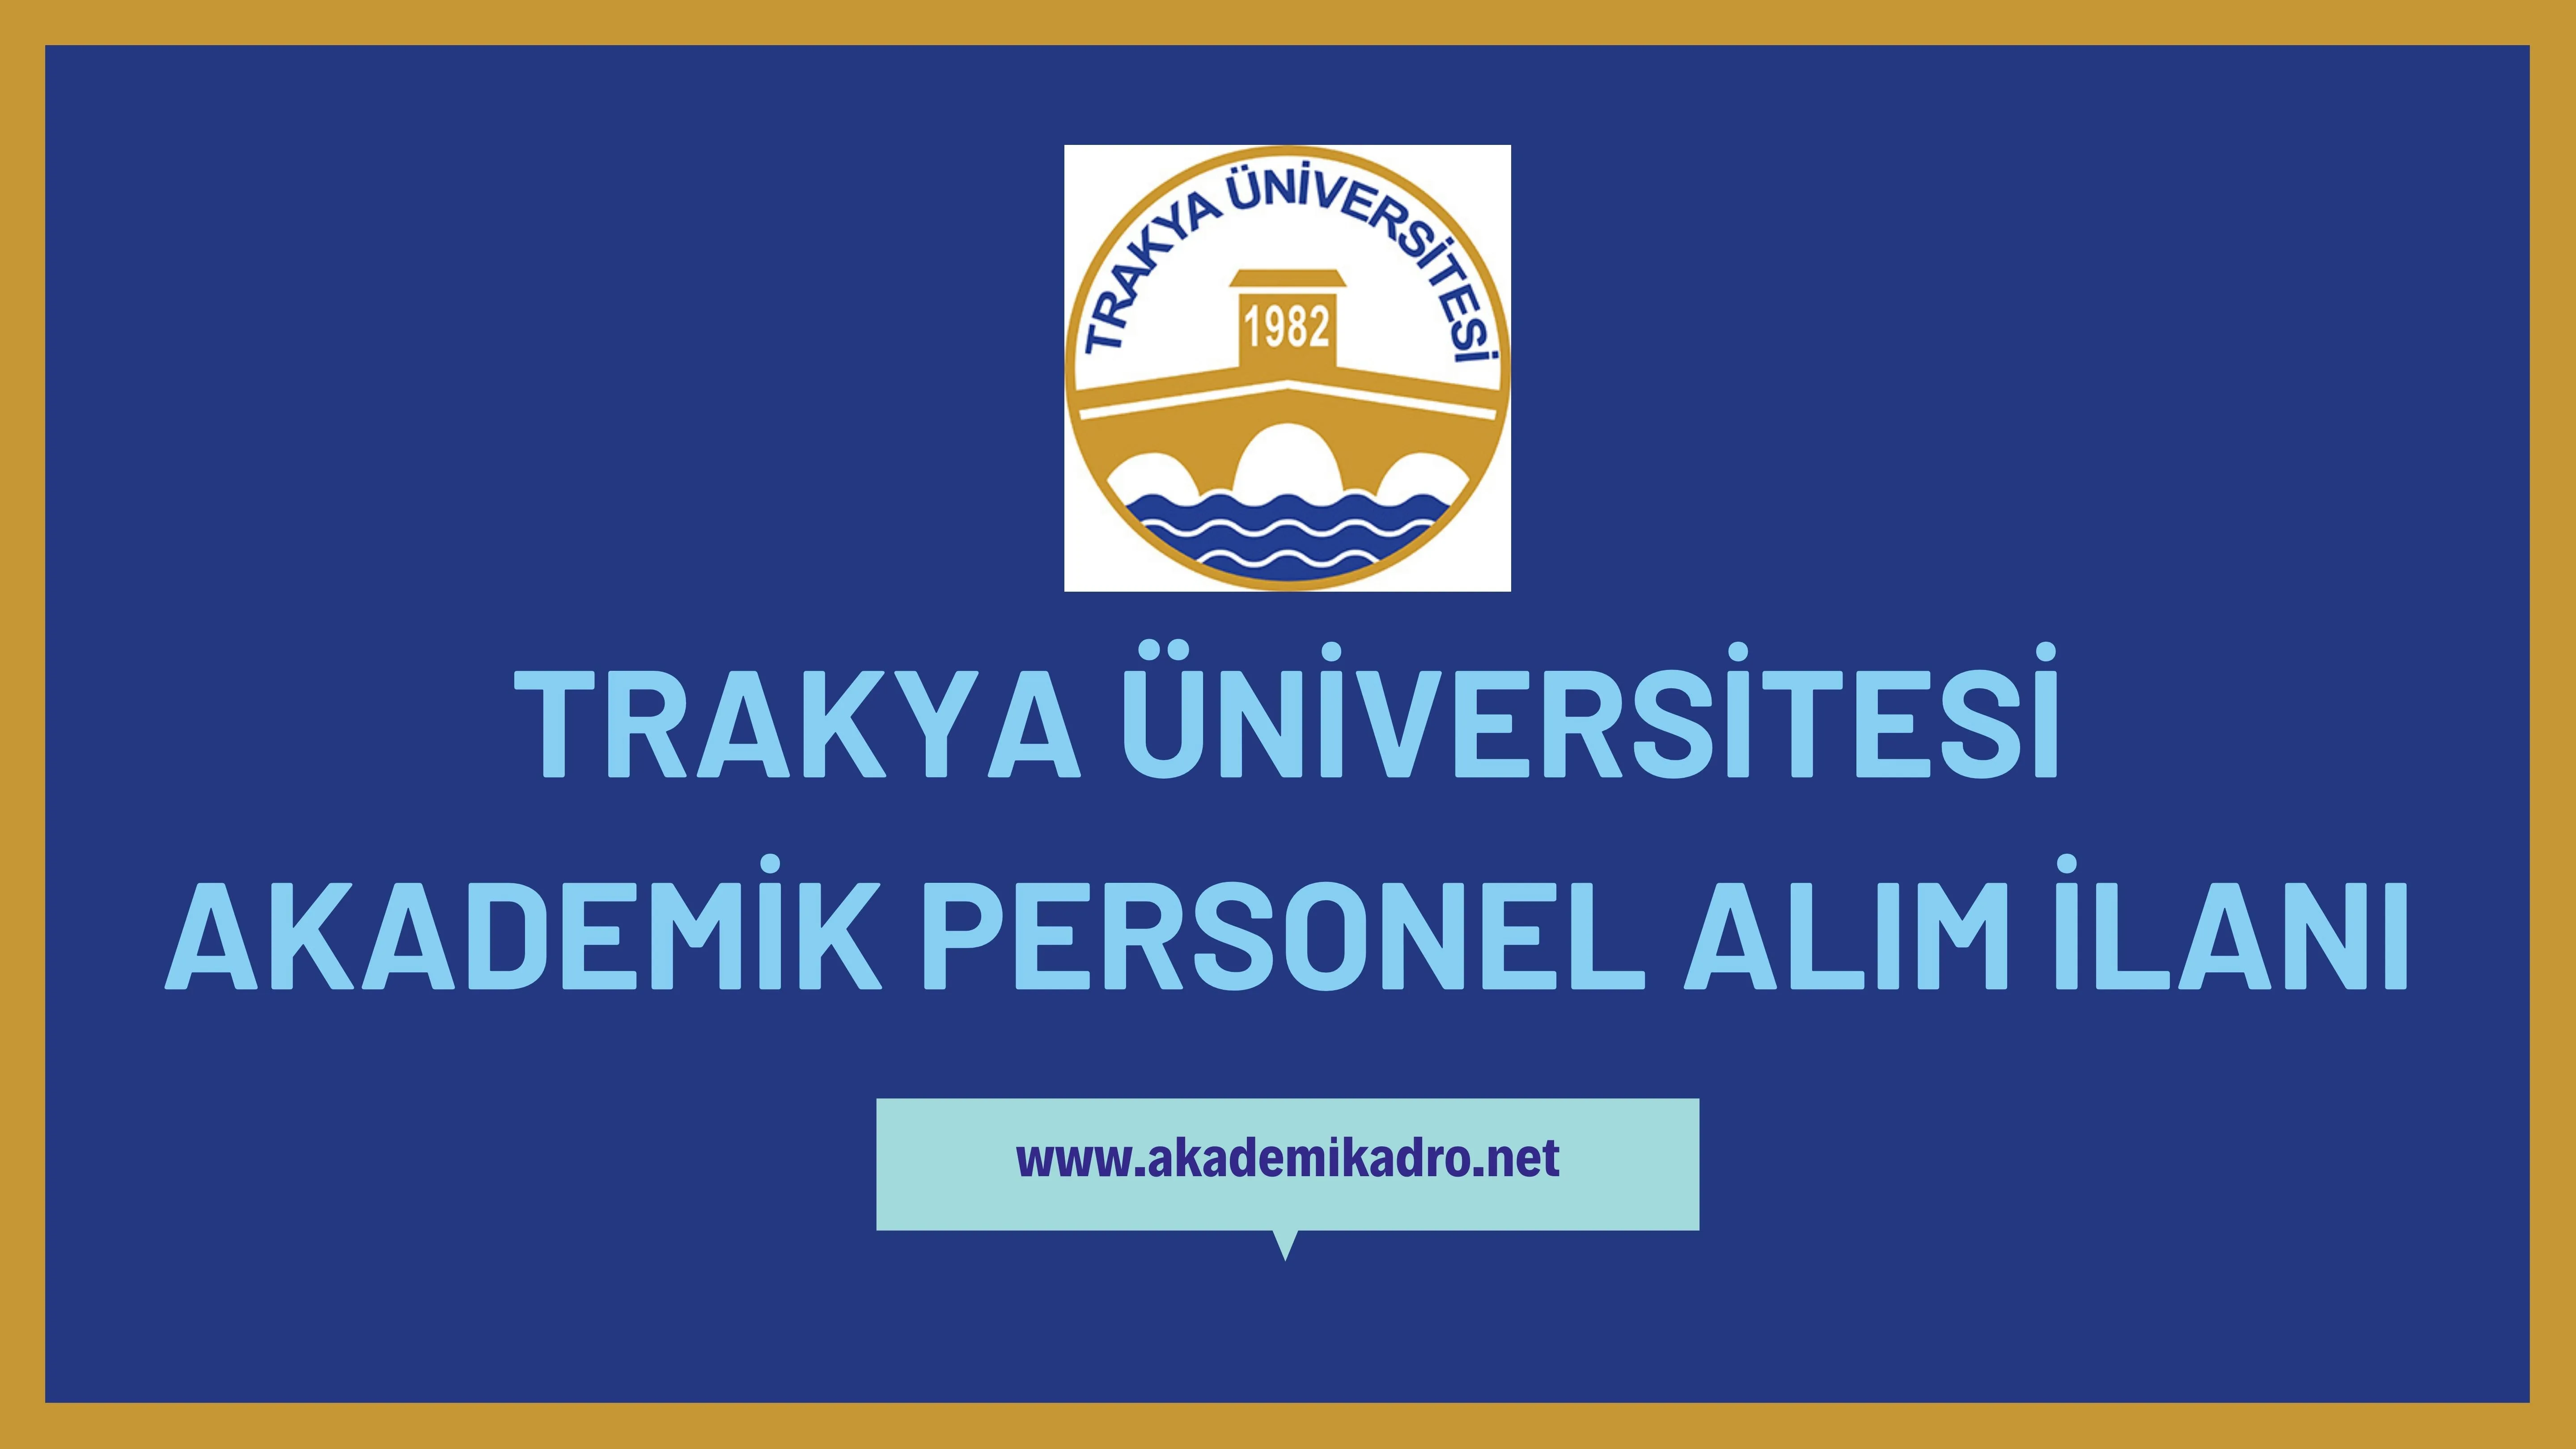 Trakya Üniversitesi birçok alandan 39 akademik personel alacak.